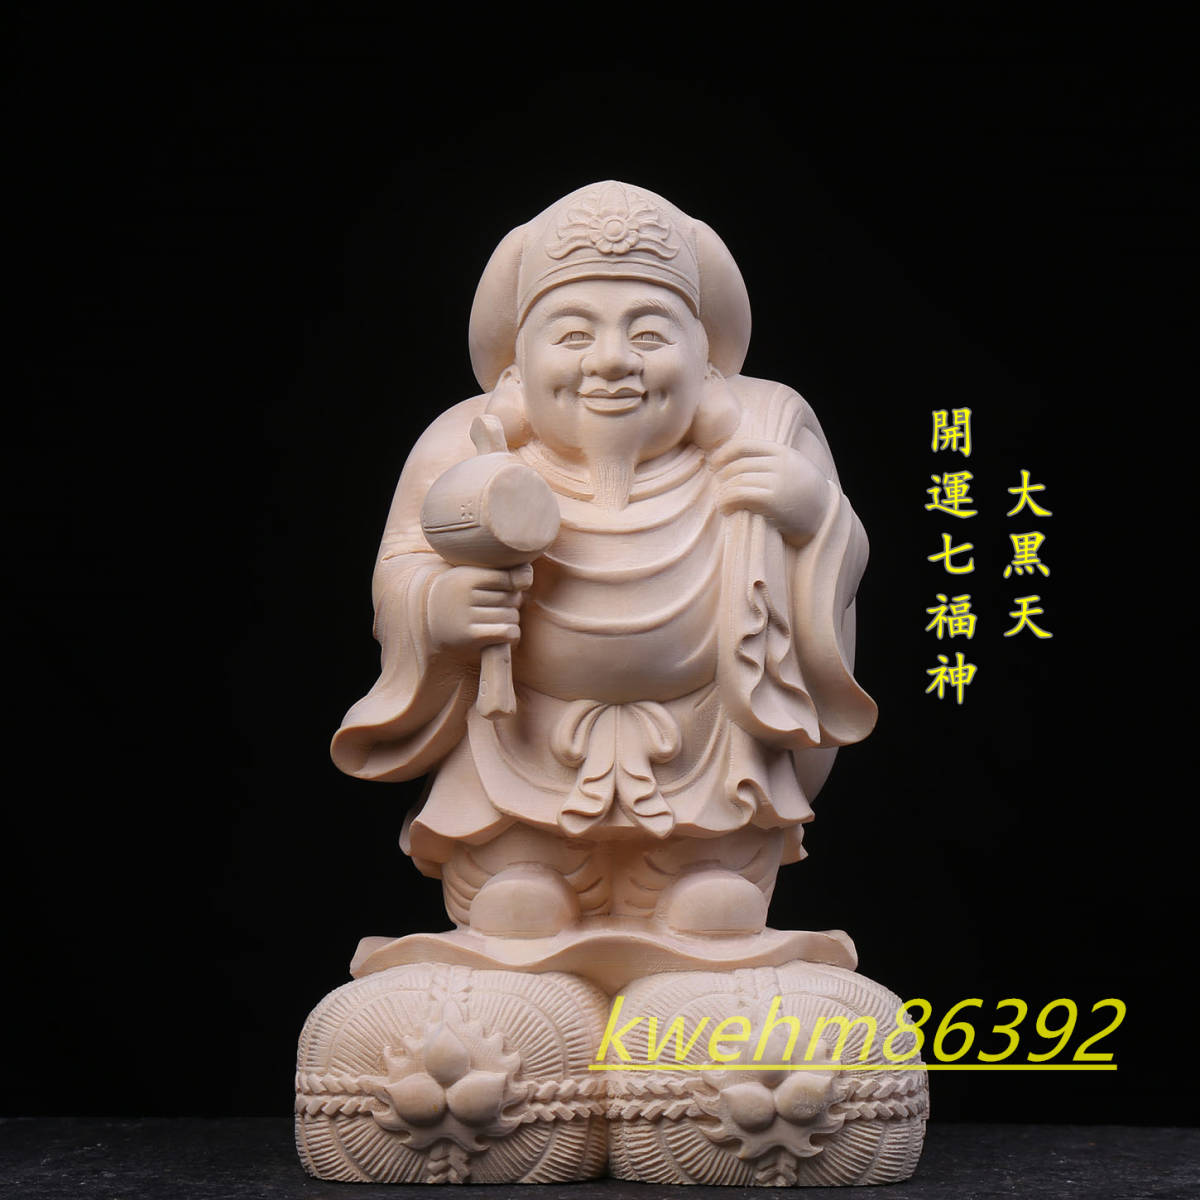 一部予約！】 仏像 木彫り 七福神 仏教工芸品 檜材 天然の木 一刀彫